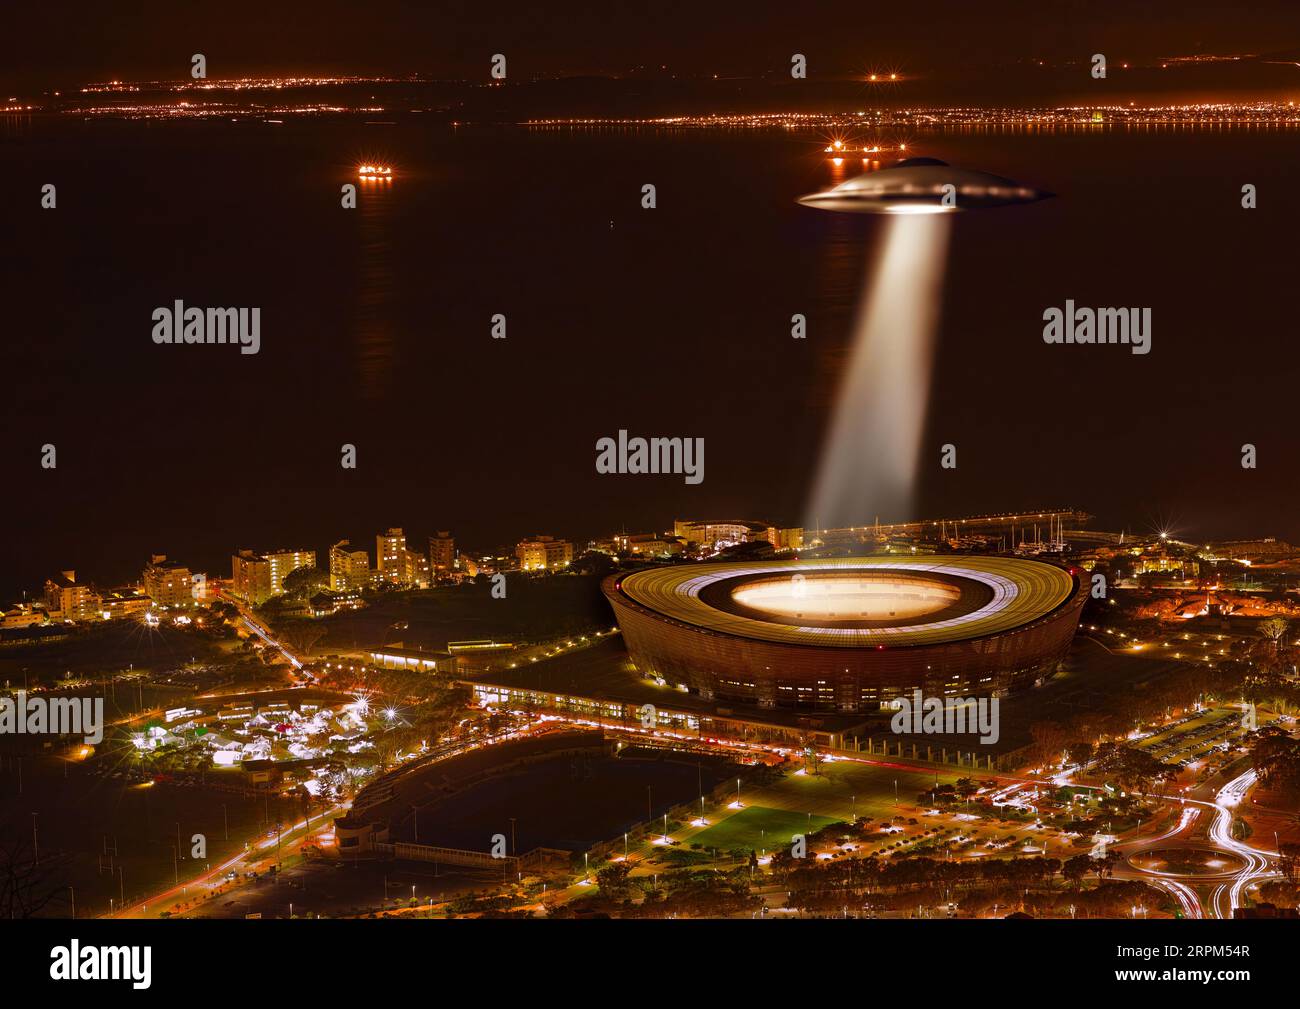 UFO, Licht und Stadt in der Nacht, Alien Invasion und Suche mit Licht auf Stadion in Kapstadt. UAP-Schiff, fliegende Untertasse und Traktorstrahl im dunklen Stadtbild Stockfoto